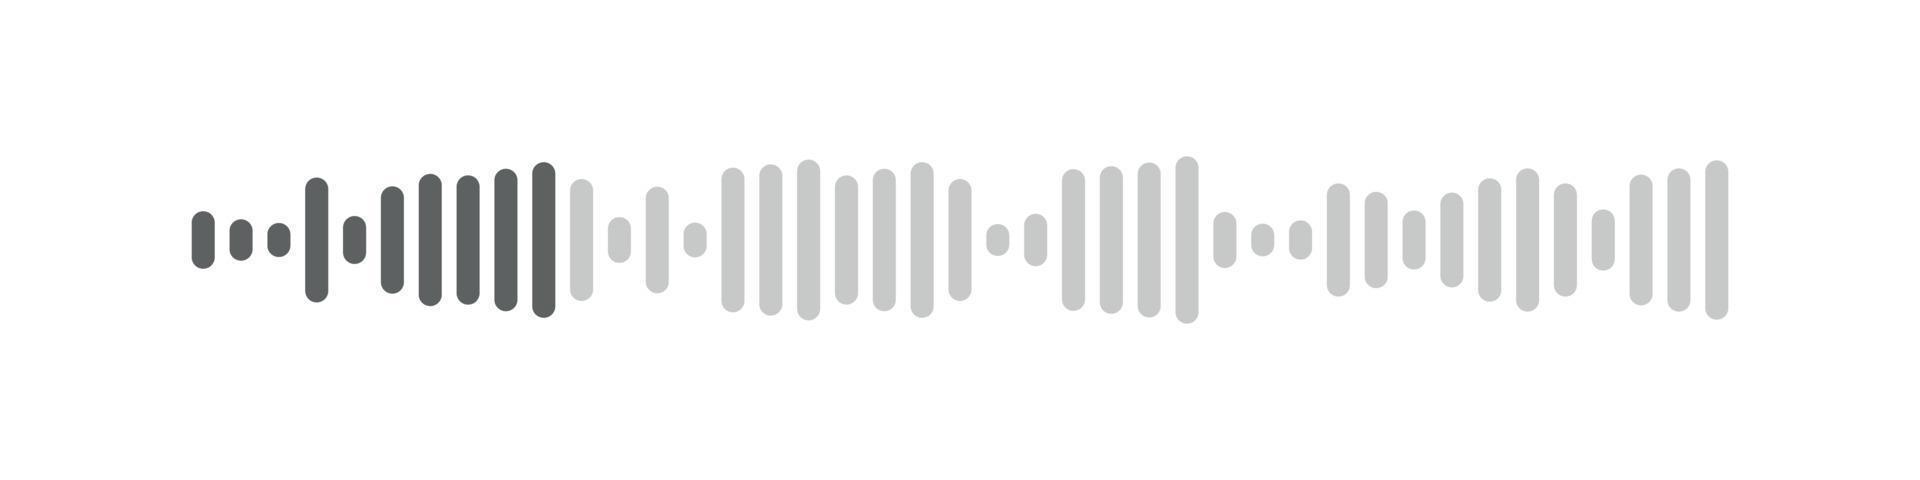 Podcast Klang Wellen Sammlung. Stimme Botschaft zum Sozial Medien App. Equalizer Vorlage, Klang Spektrum. Vektor isoliert Illustration